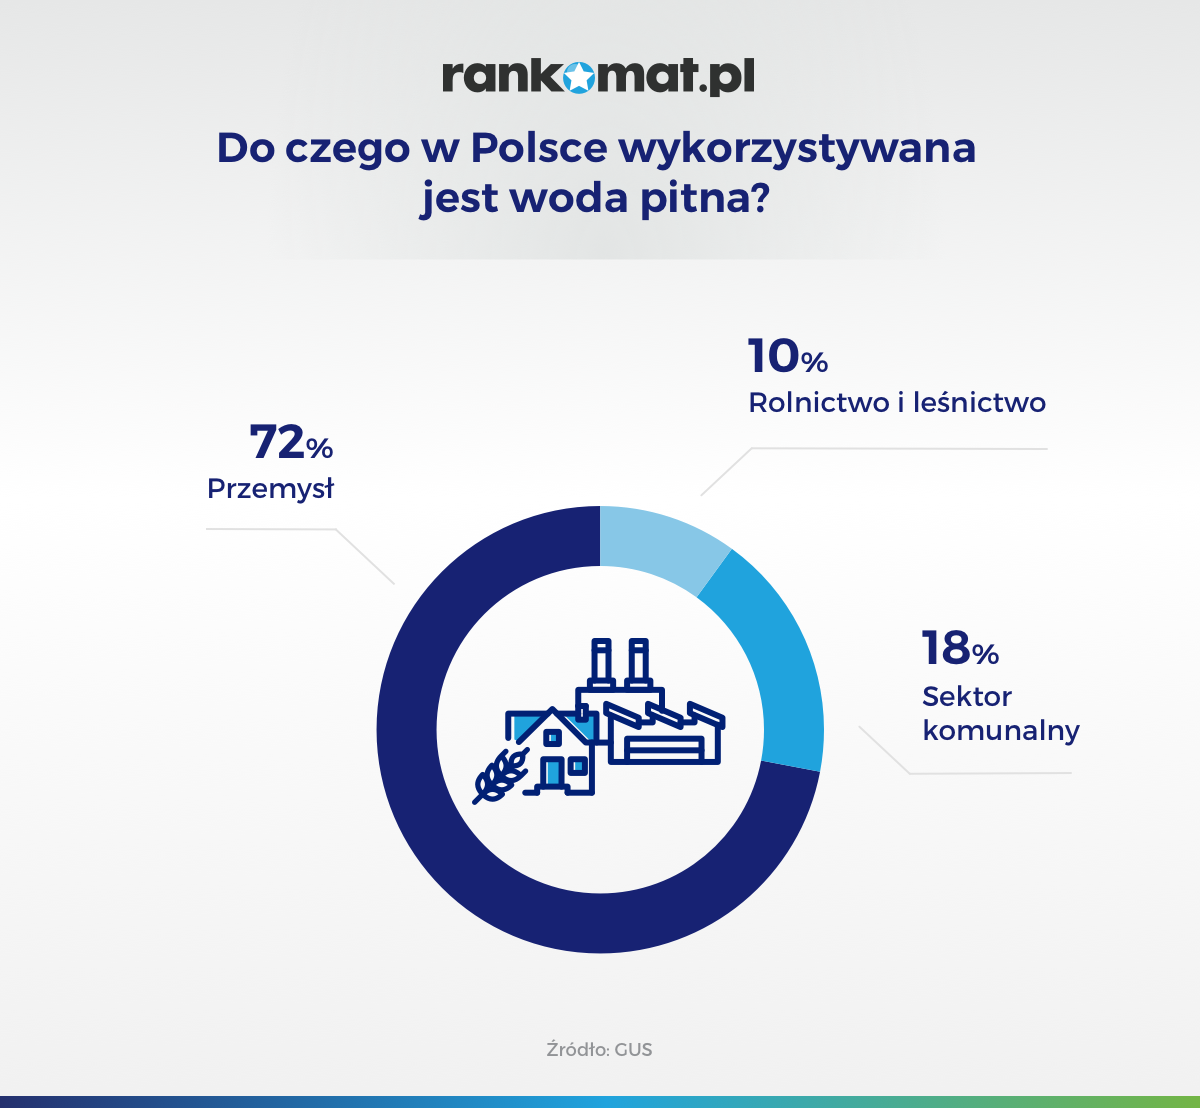 Do czego w Polsce wykorzystywana jest woda pitna?